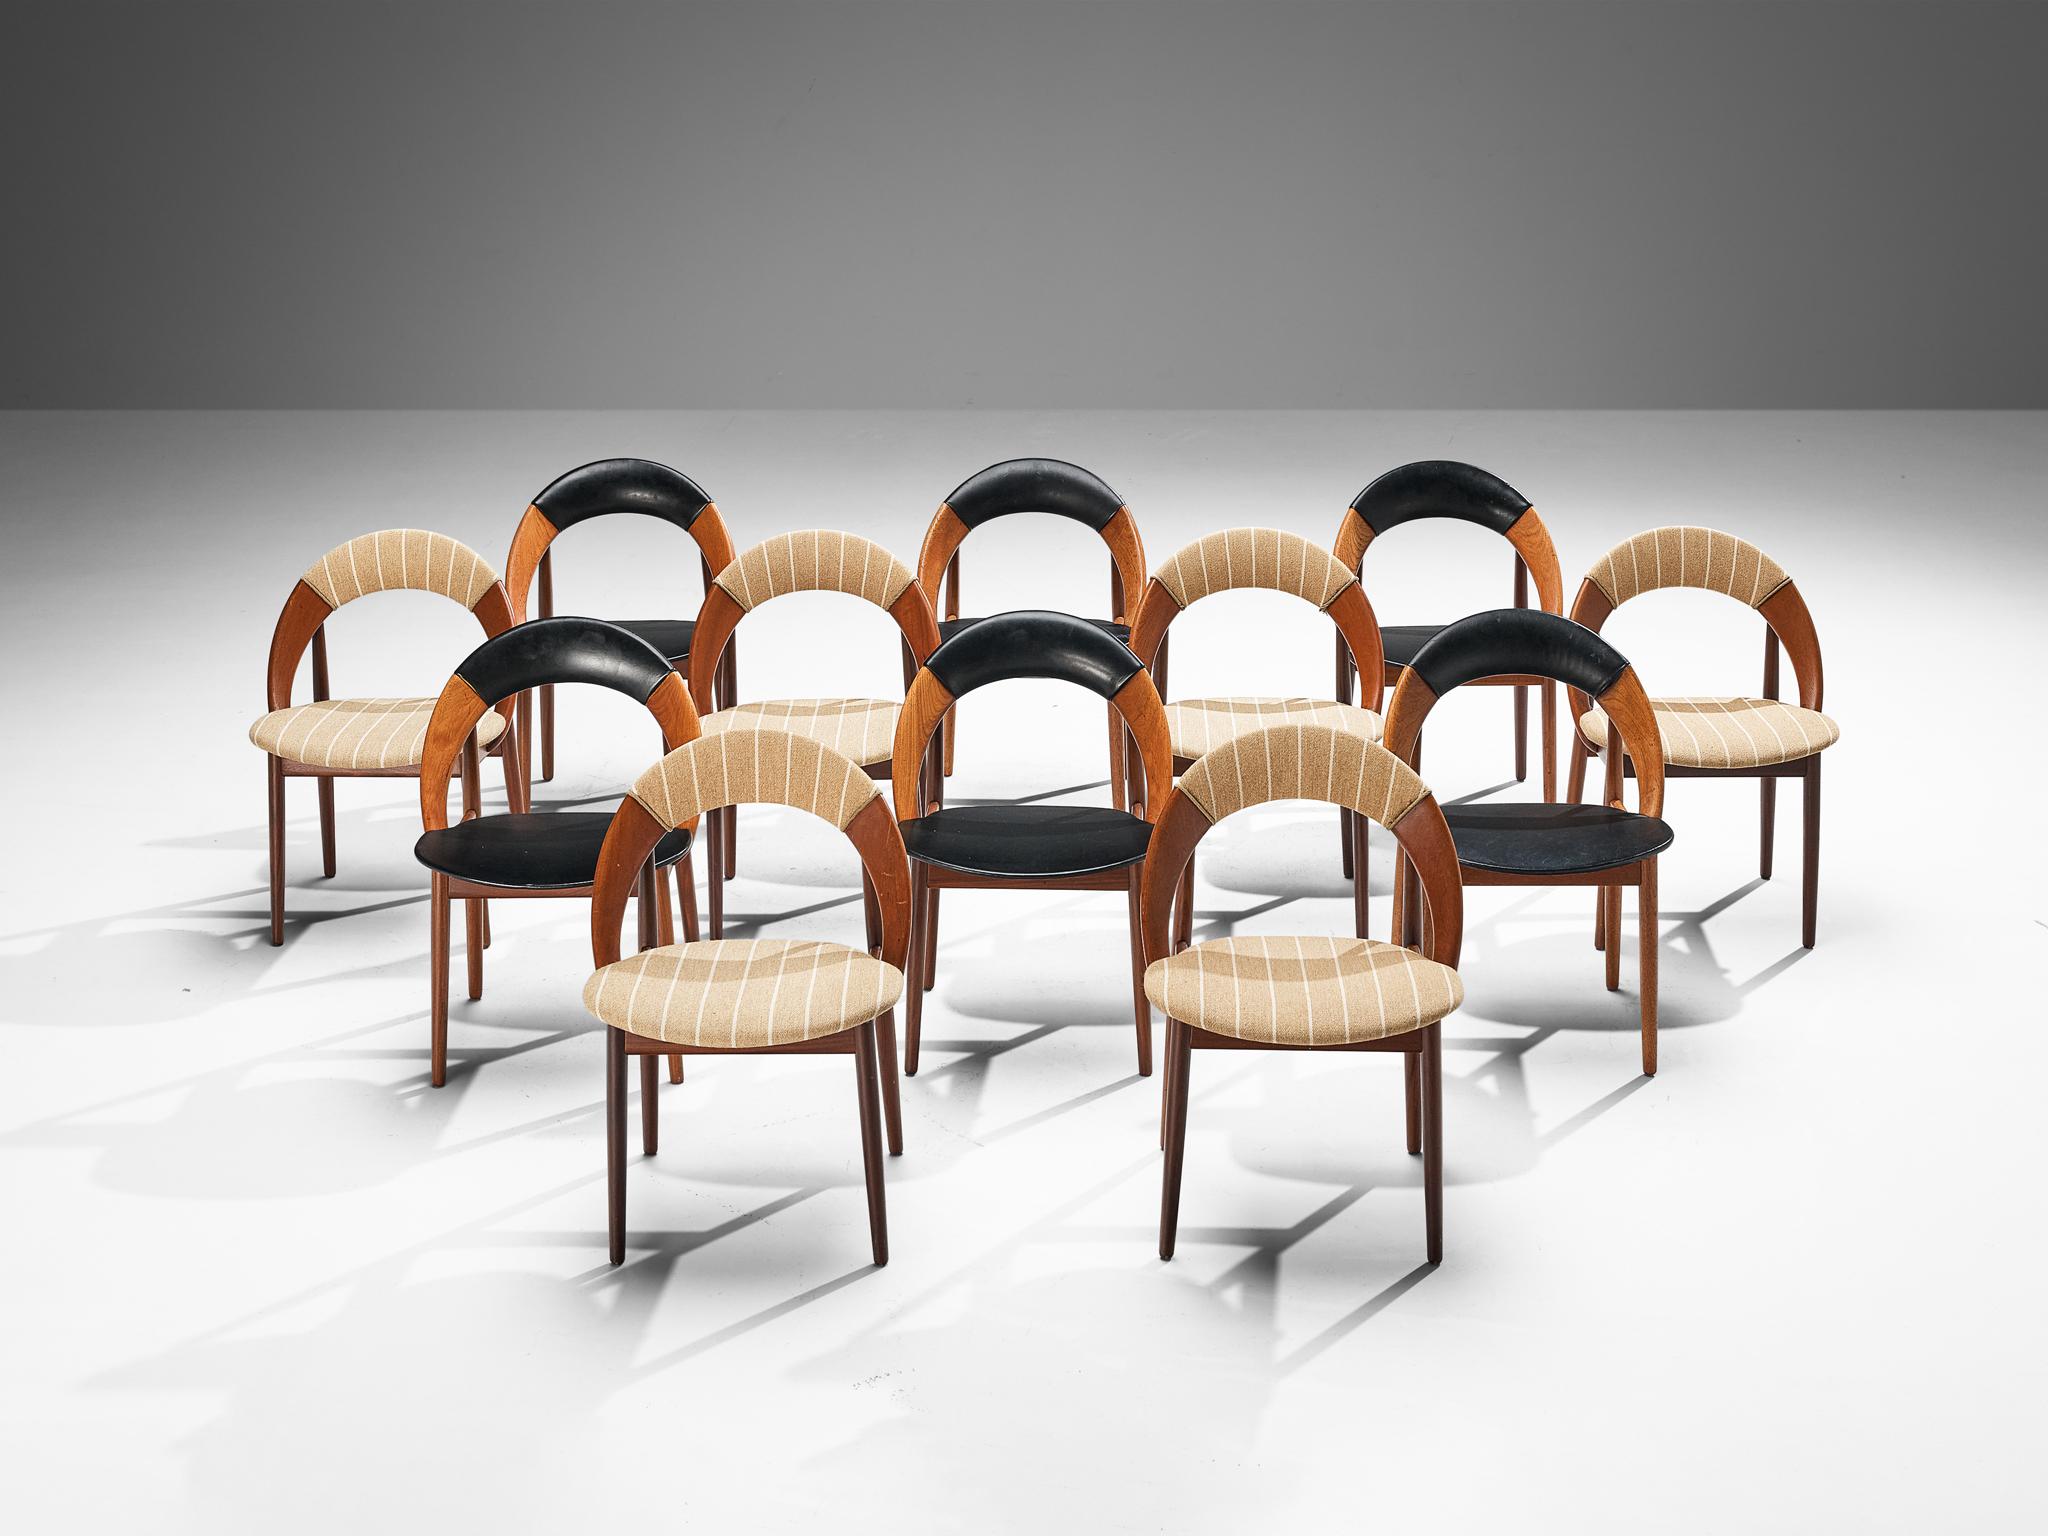 Arne Hovmand-Olsen, ensemble de douze chaises de salle à manger, teck, tissu, similicuir, Danemark, années 1960 

Ensemble de douze chaises de salle à manger conçues par le designer danois Arne Hovmand-Olsen. Les chaises ont un design très simple et